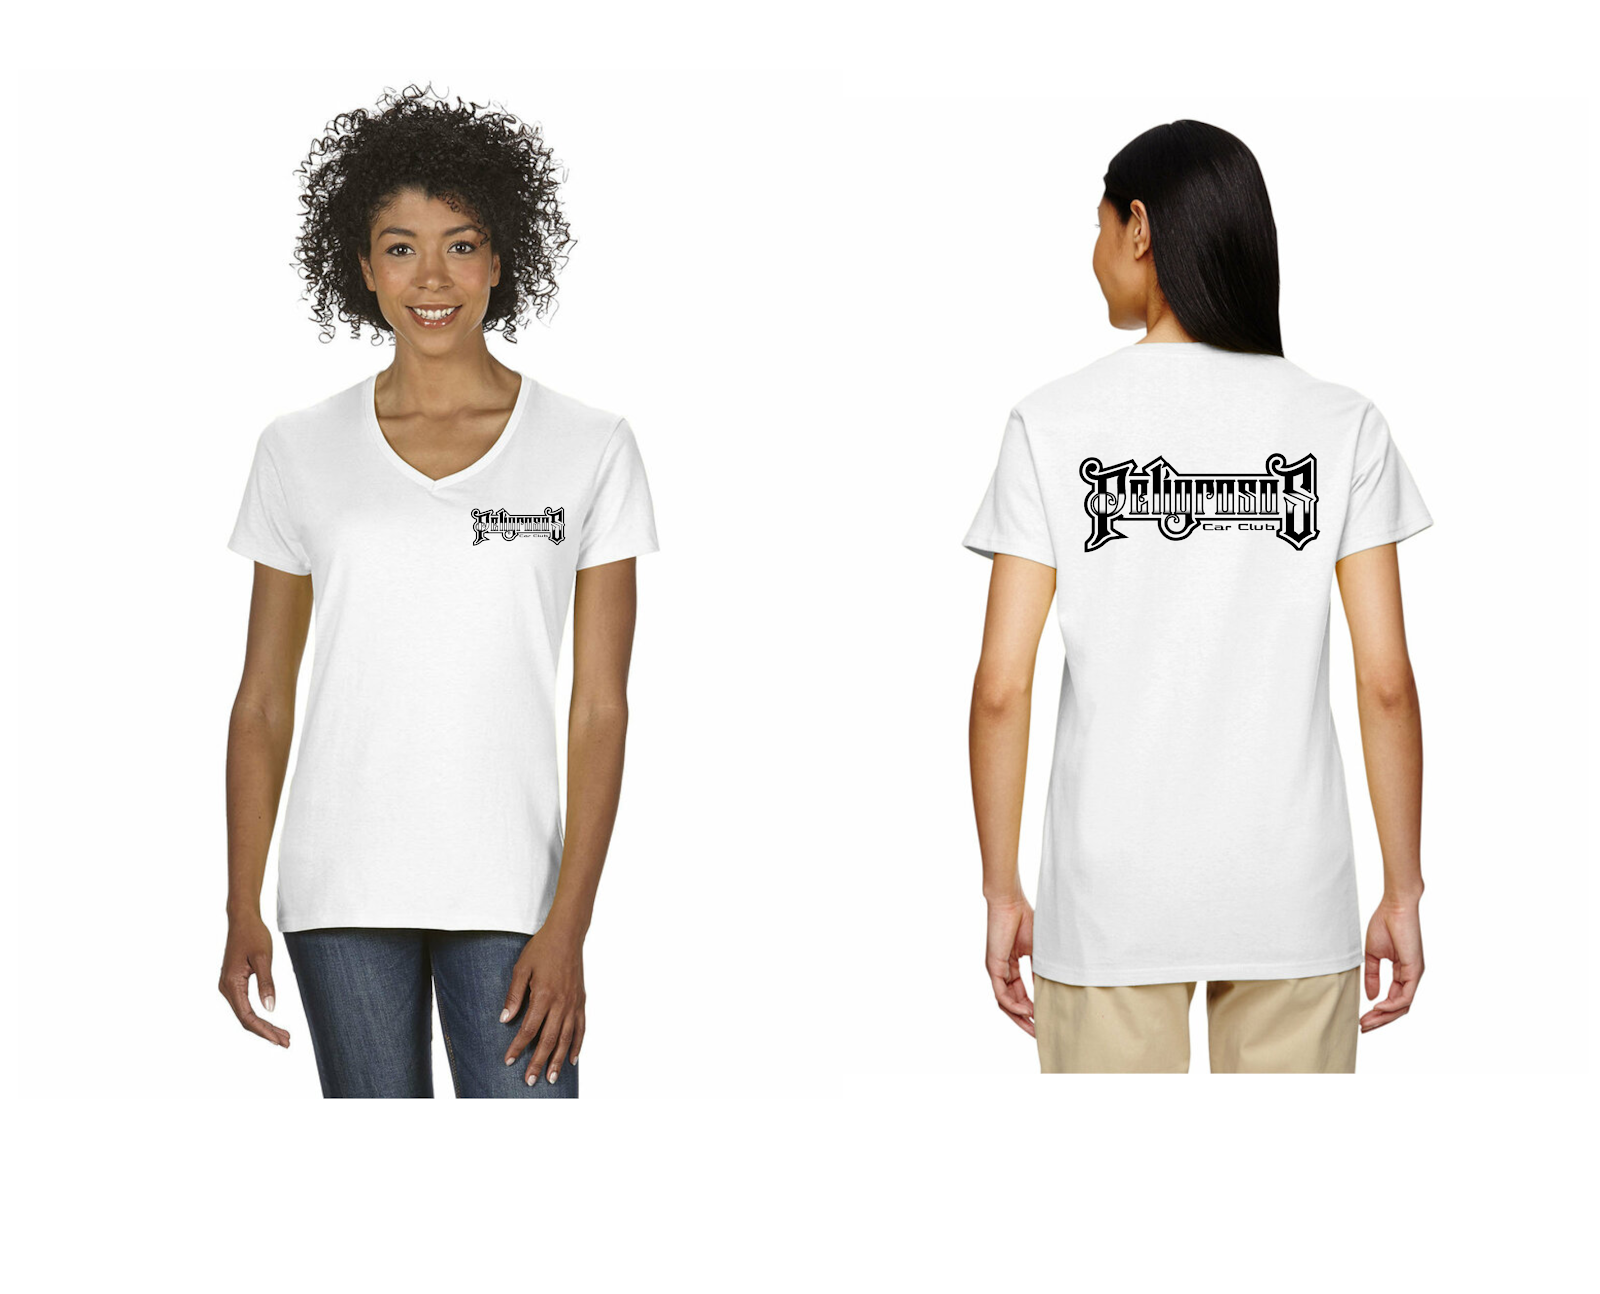 100% Cotton Women's V-Neck White Shirt